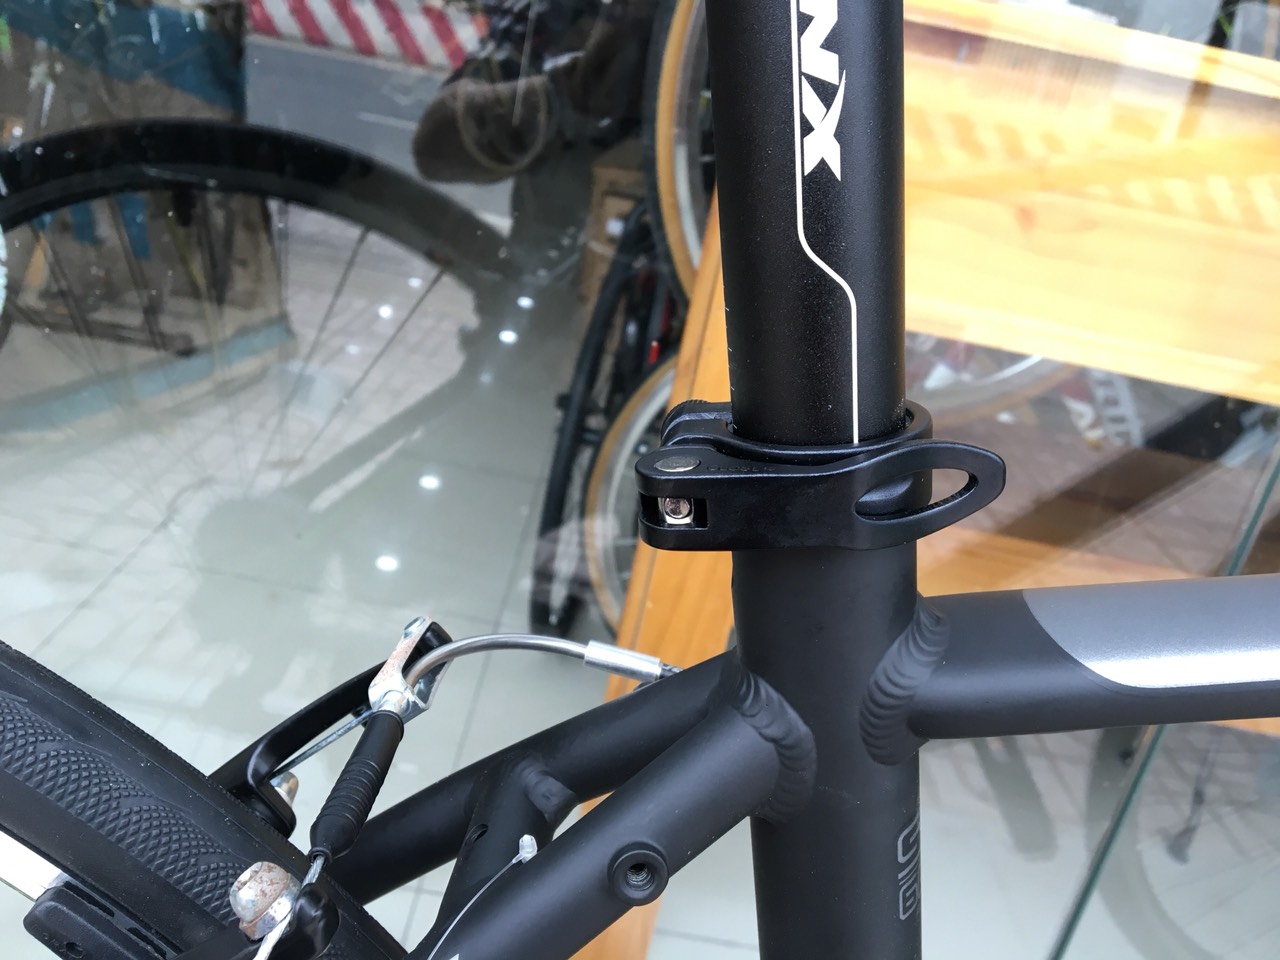 Xe đạp thể thao TRINX FREE 1.0 2019 Black Green